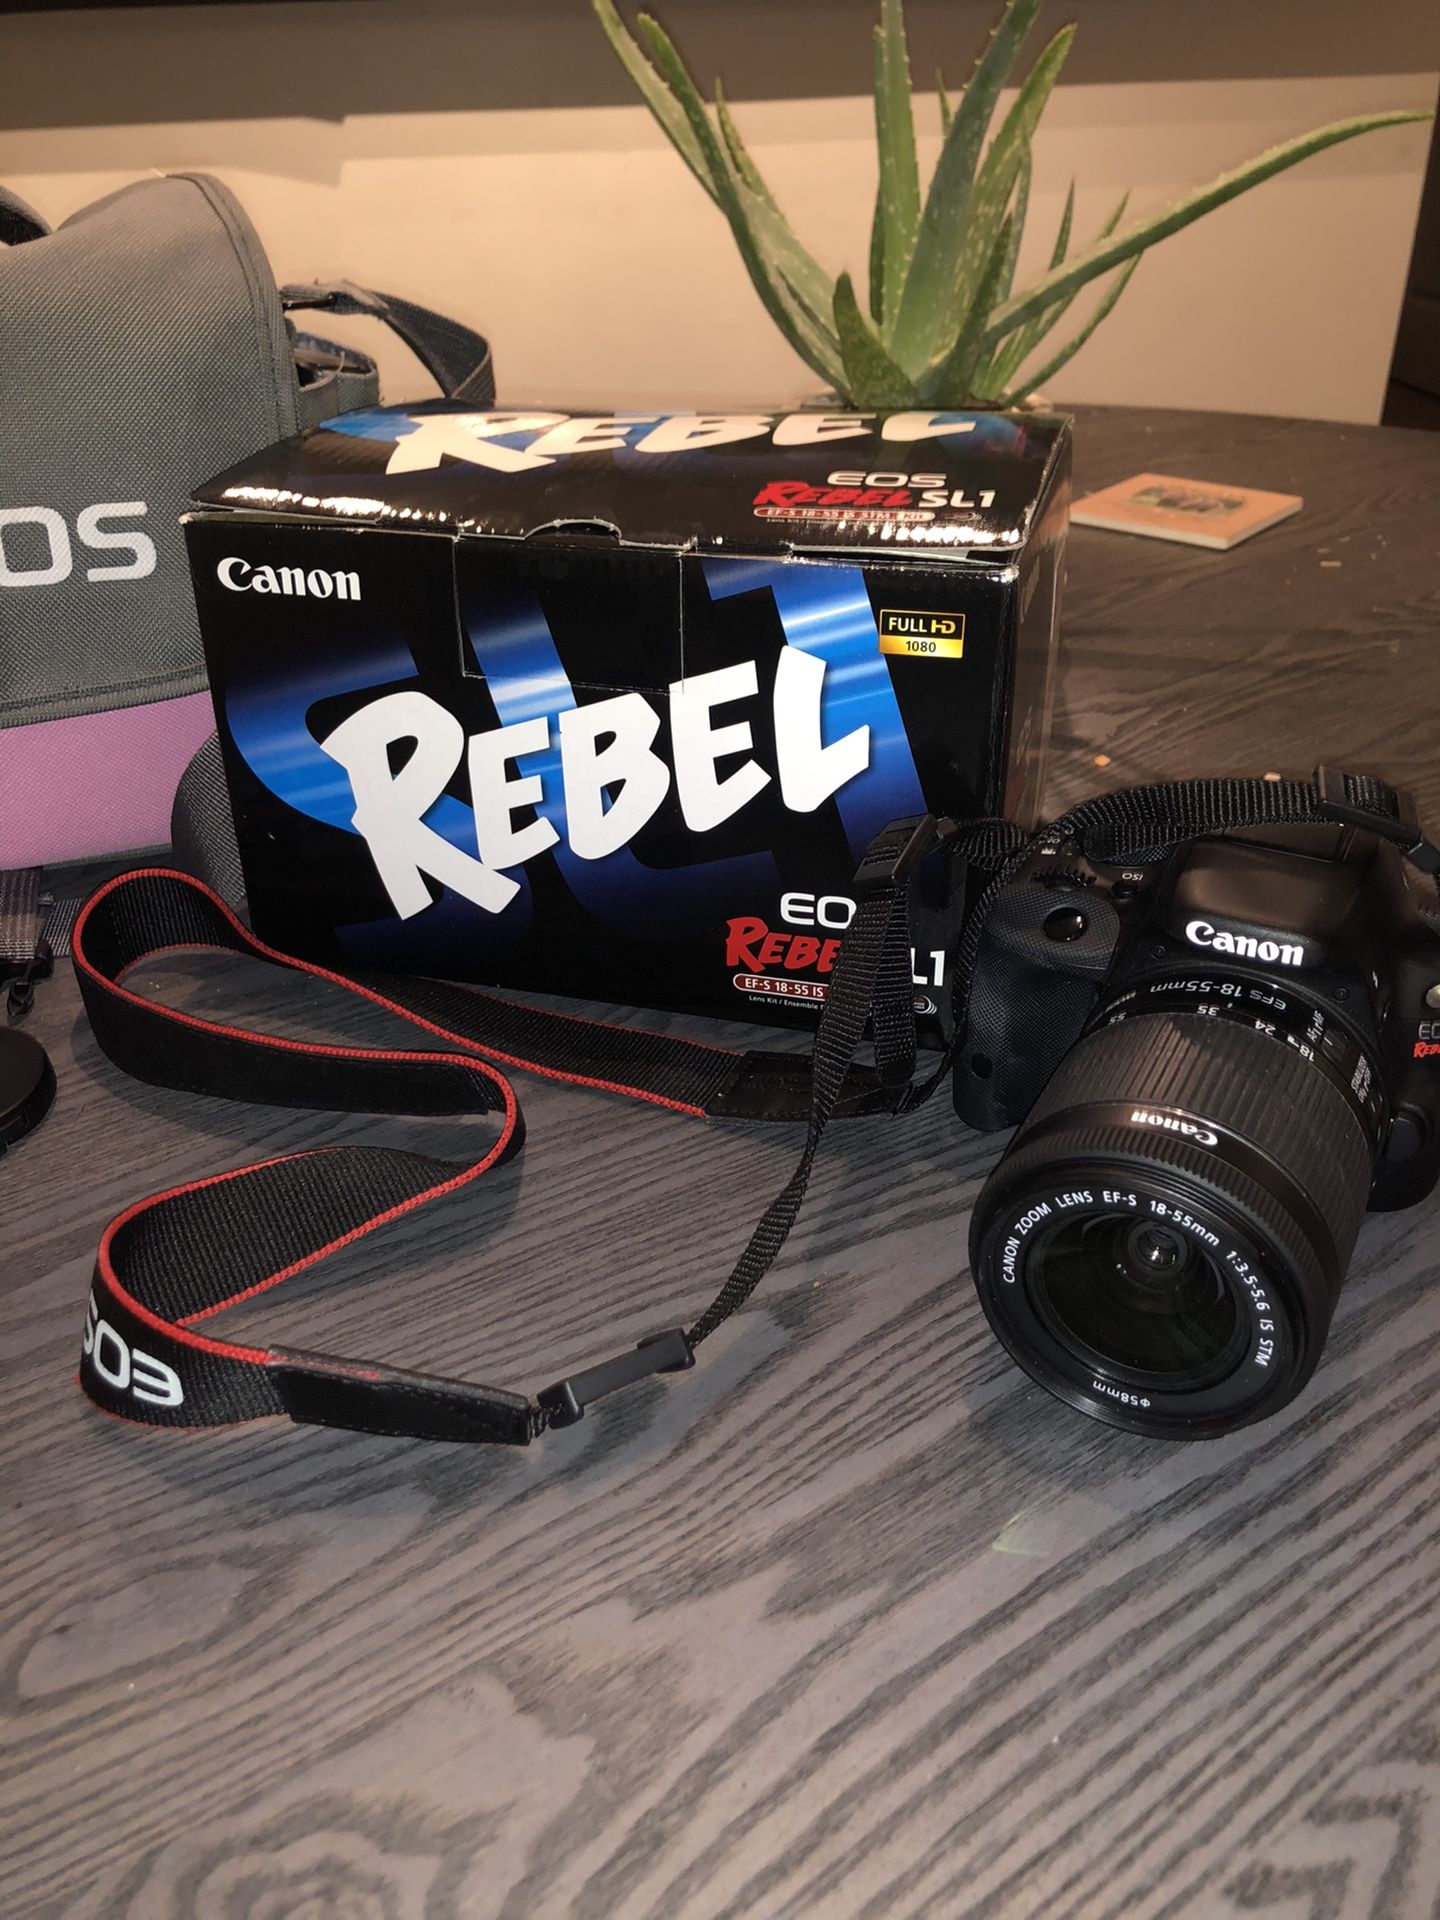 Canon Eos Rebel SL1 camera